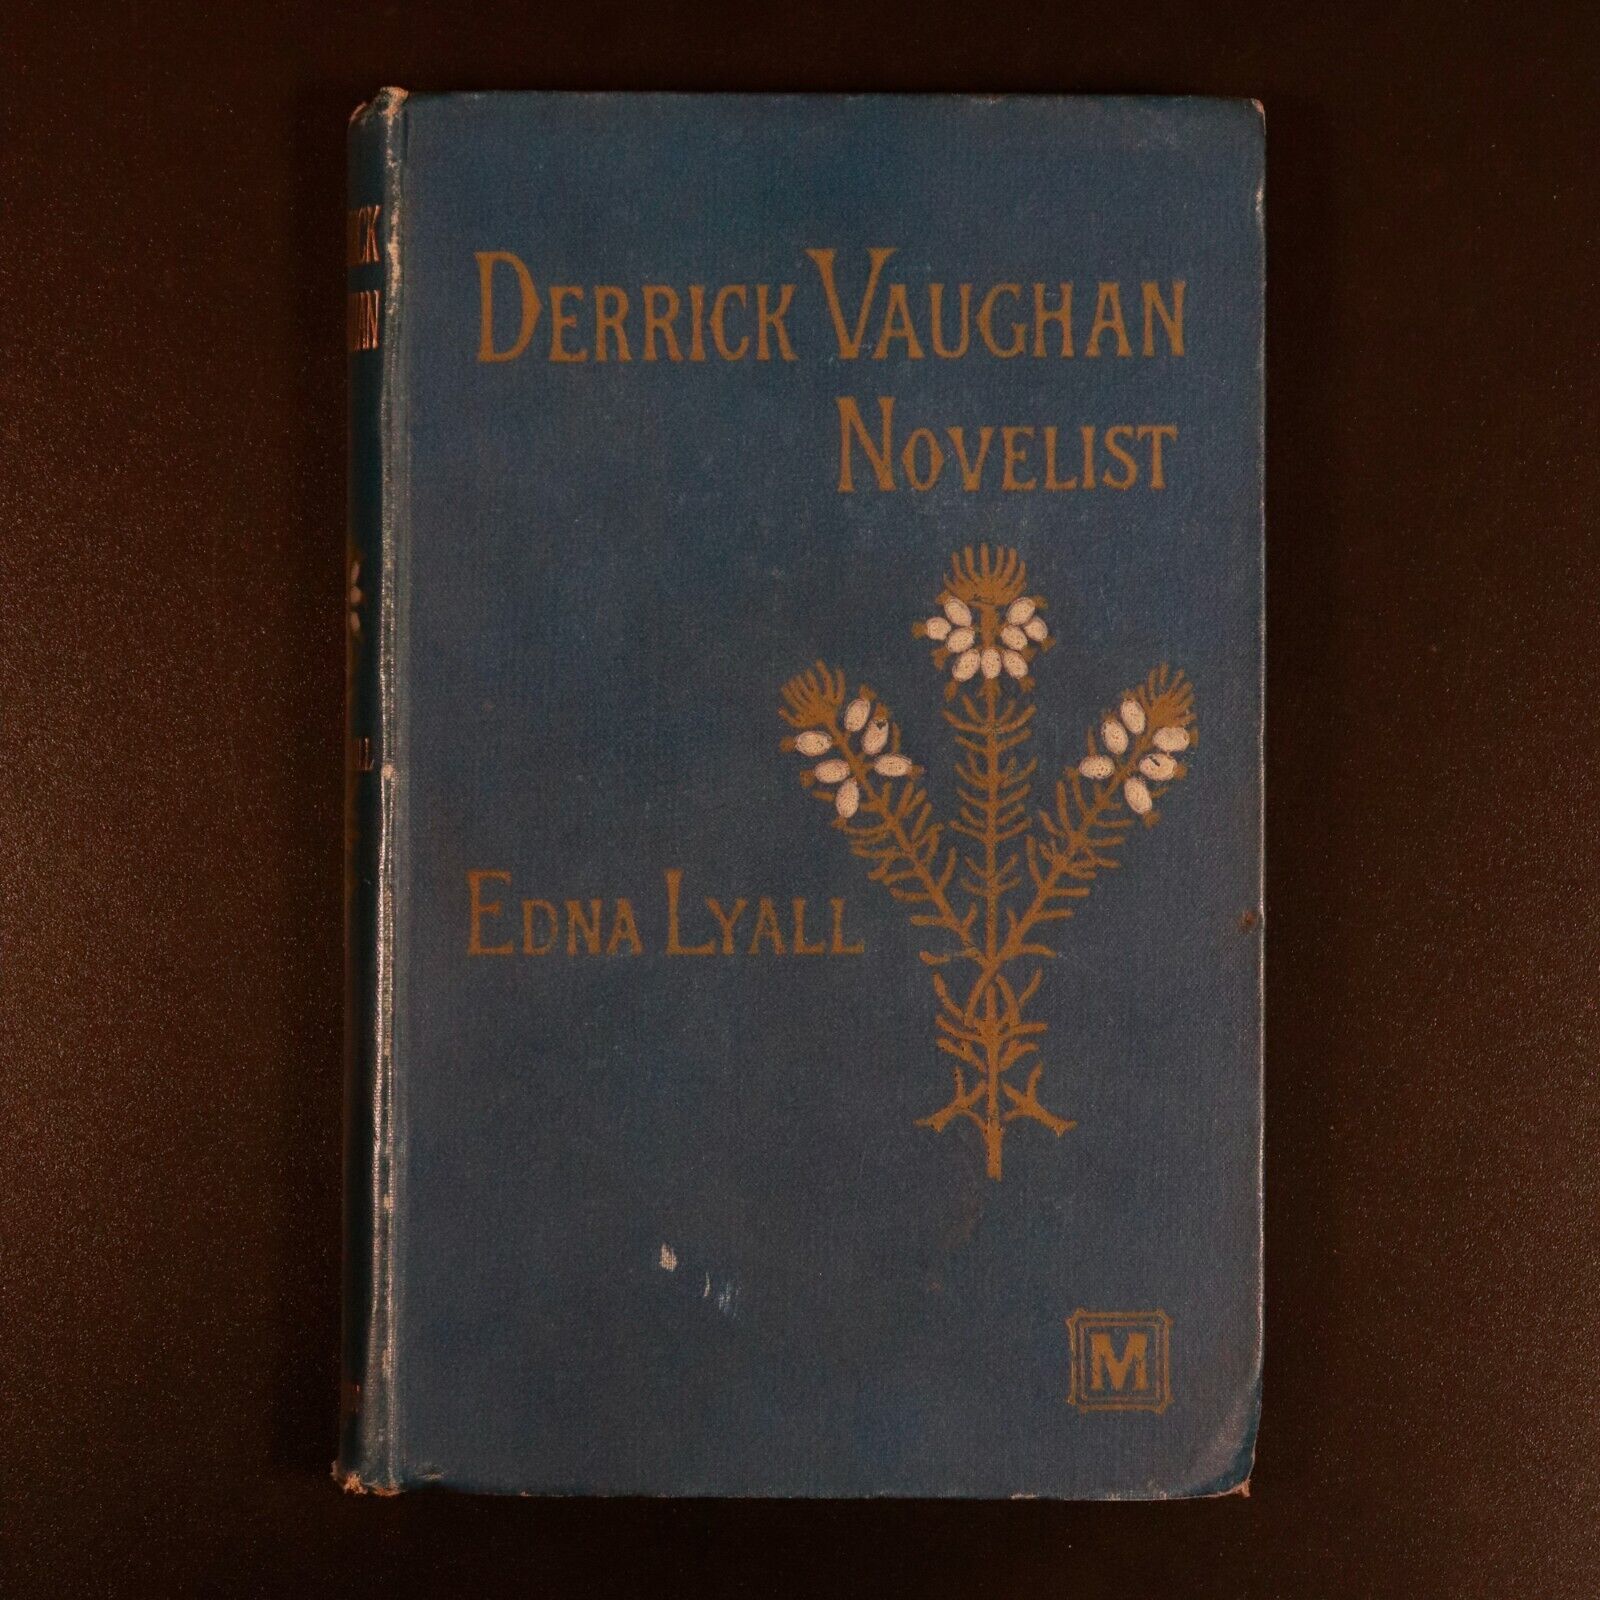 1889 Derrick Vaughan Novelist by Edna Lyall Antiquarian British Fiction Book